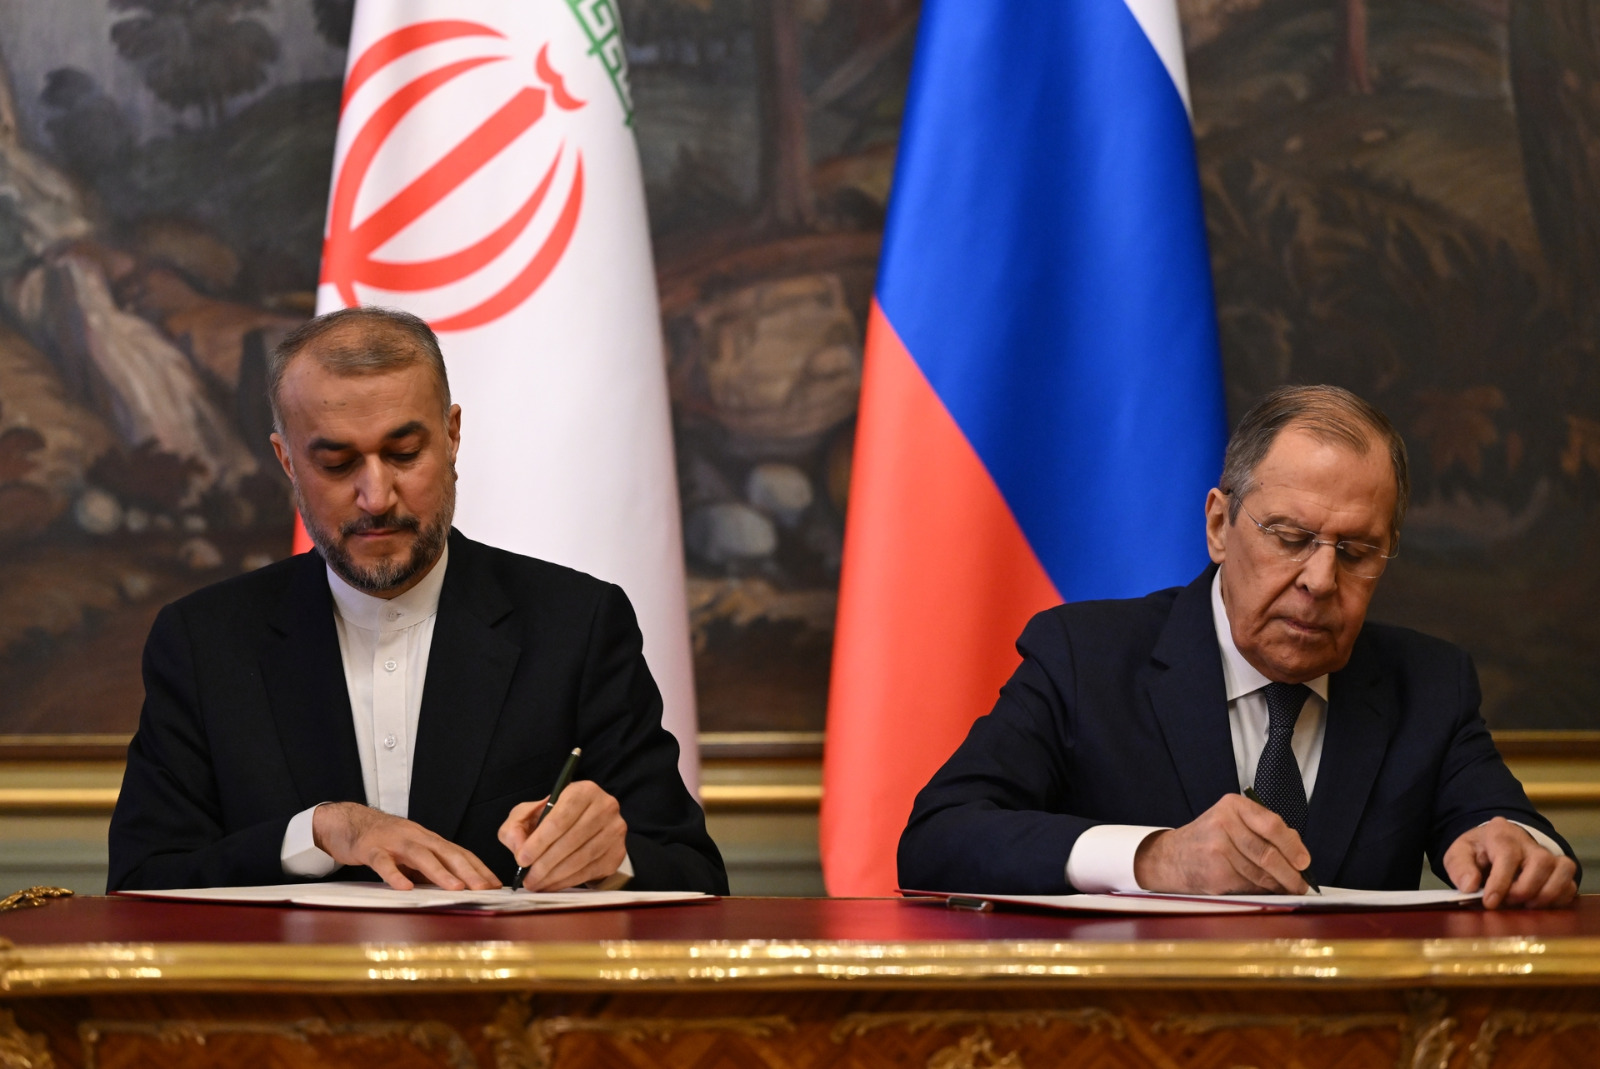 Isu apa yang akan dibahas oleh para pemimpin Rusia dan Iran pada pertemuan di Moskow?